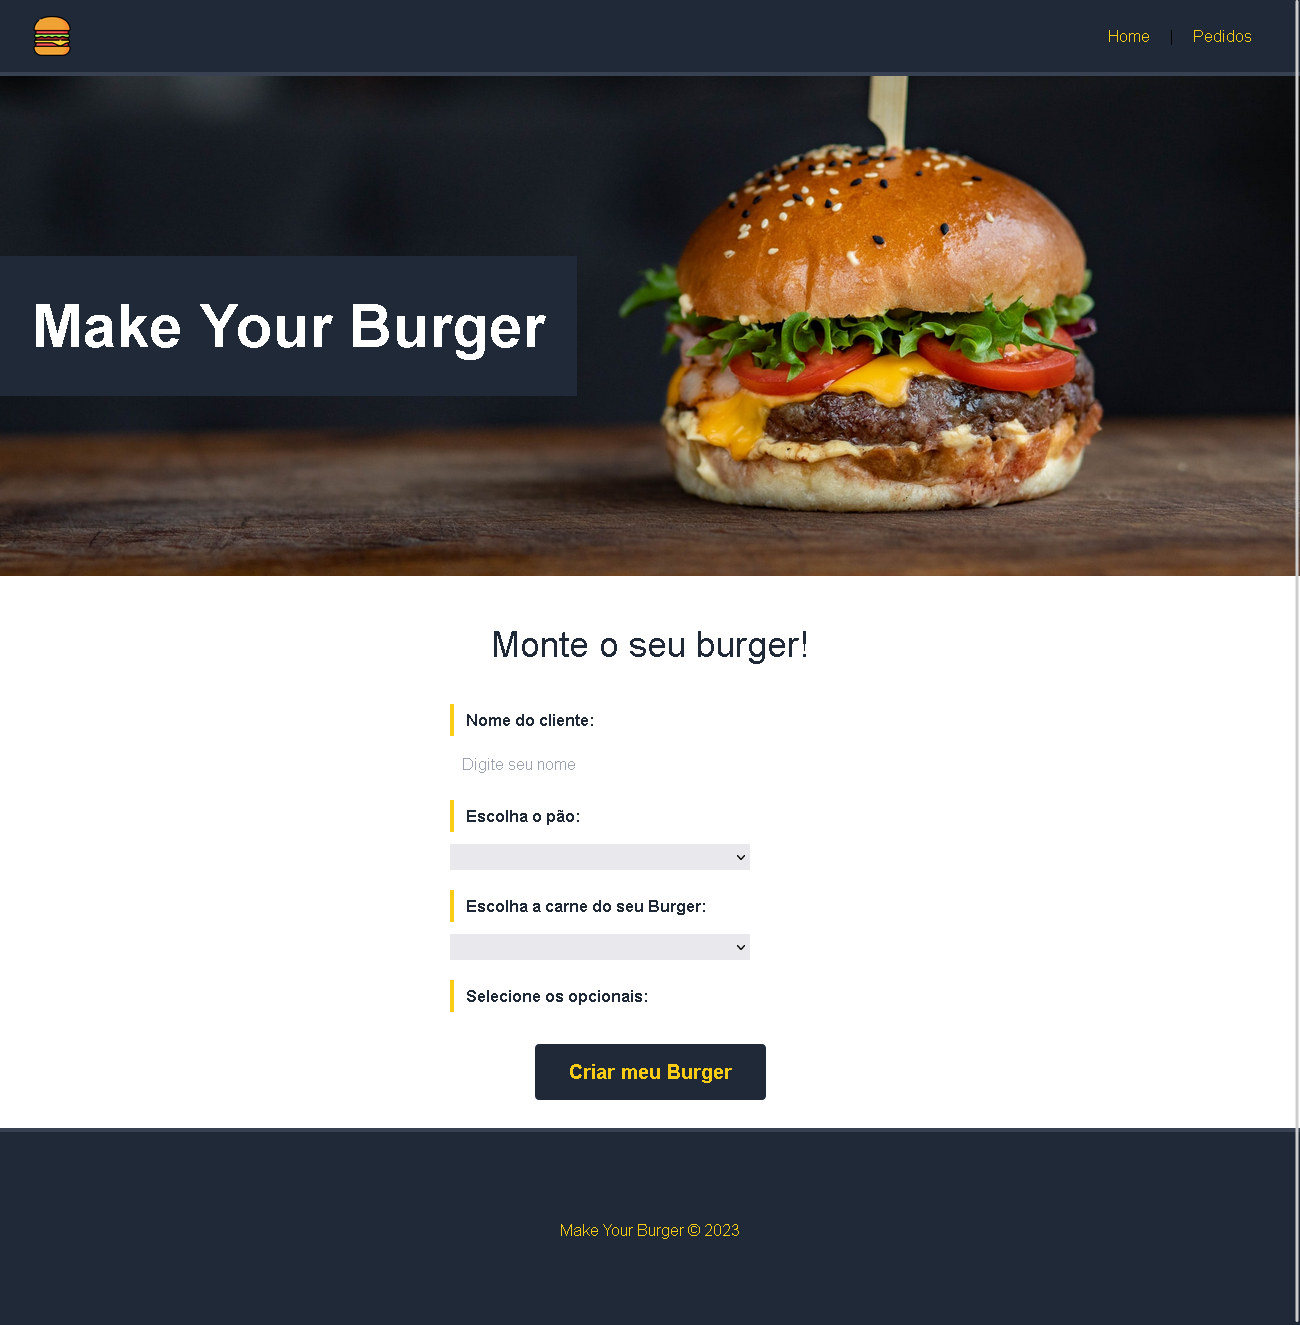 Imagem do layout da página inicial do Make Your Burger